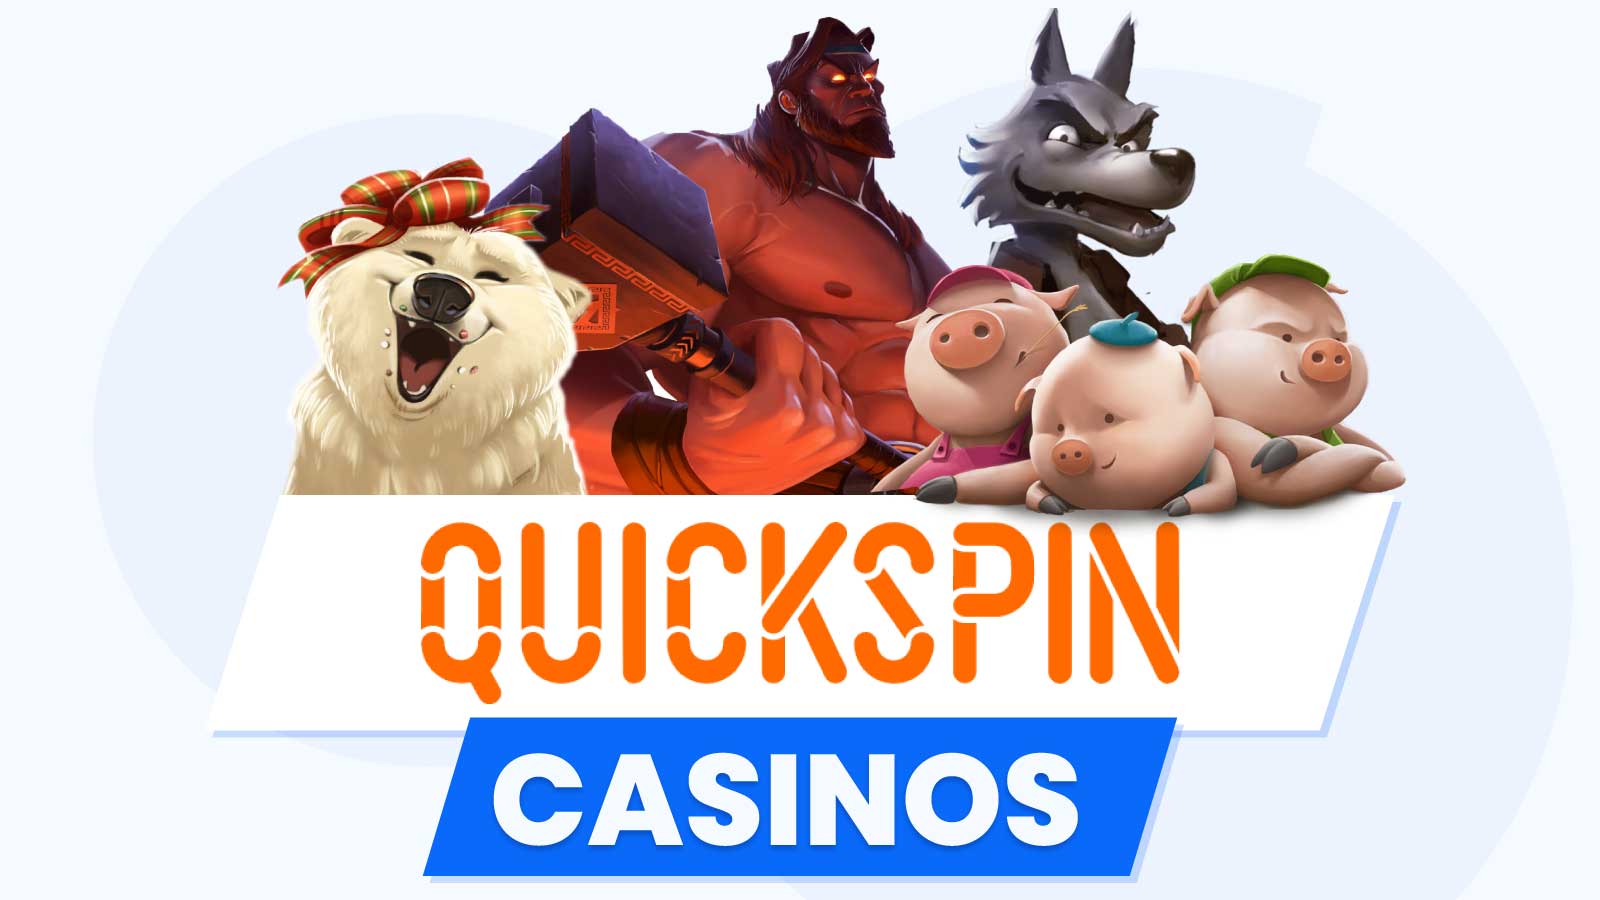 List of Top QuickSpin Casinos (2023)